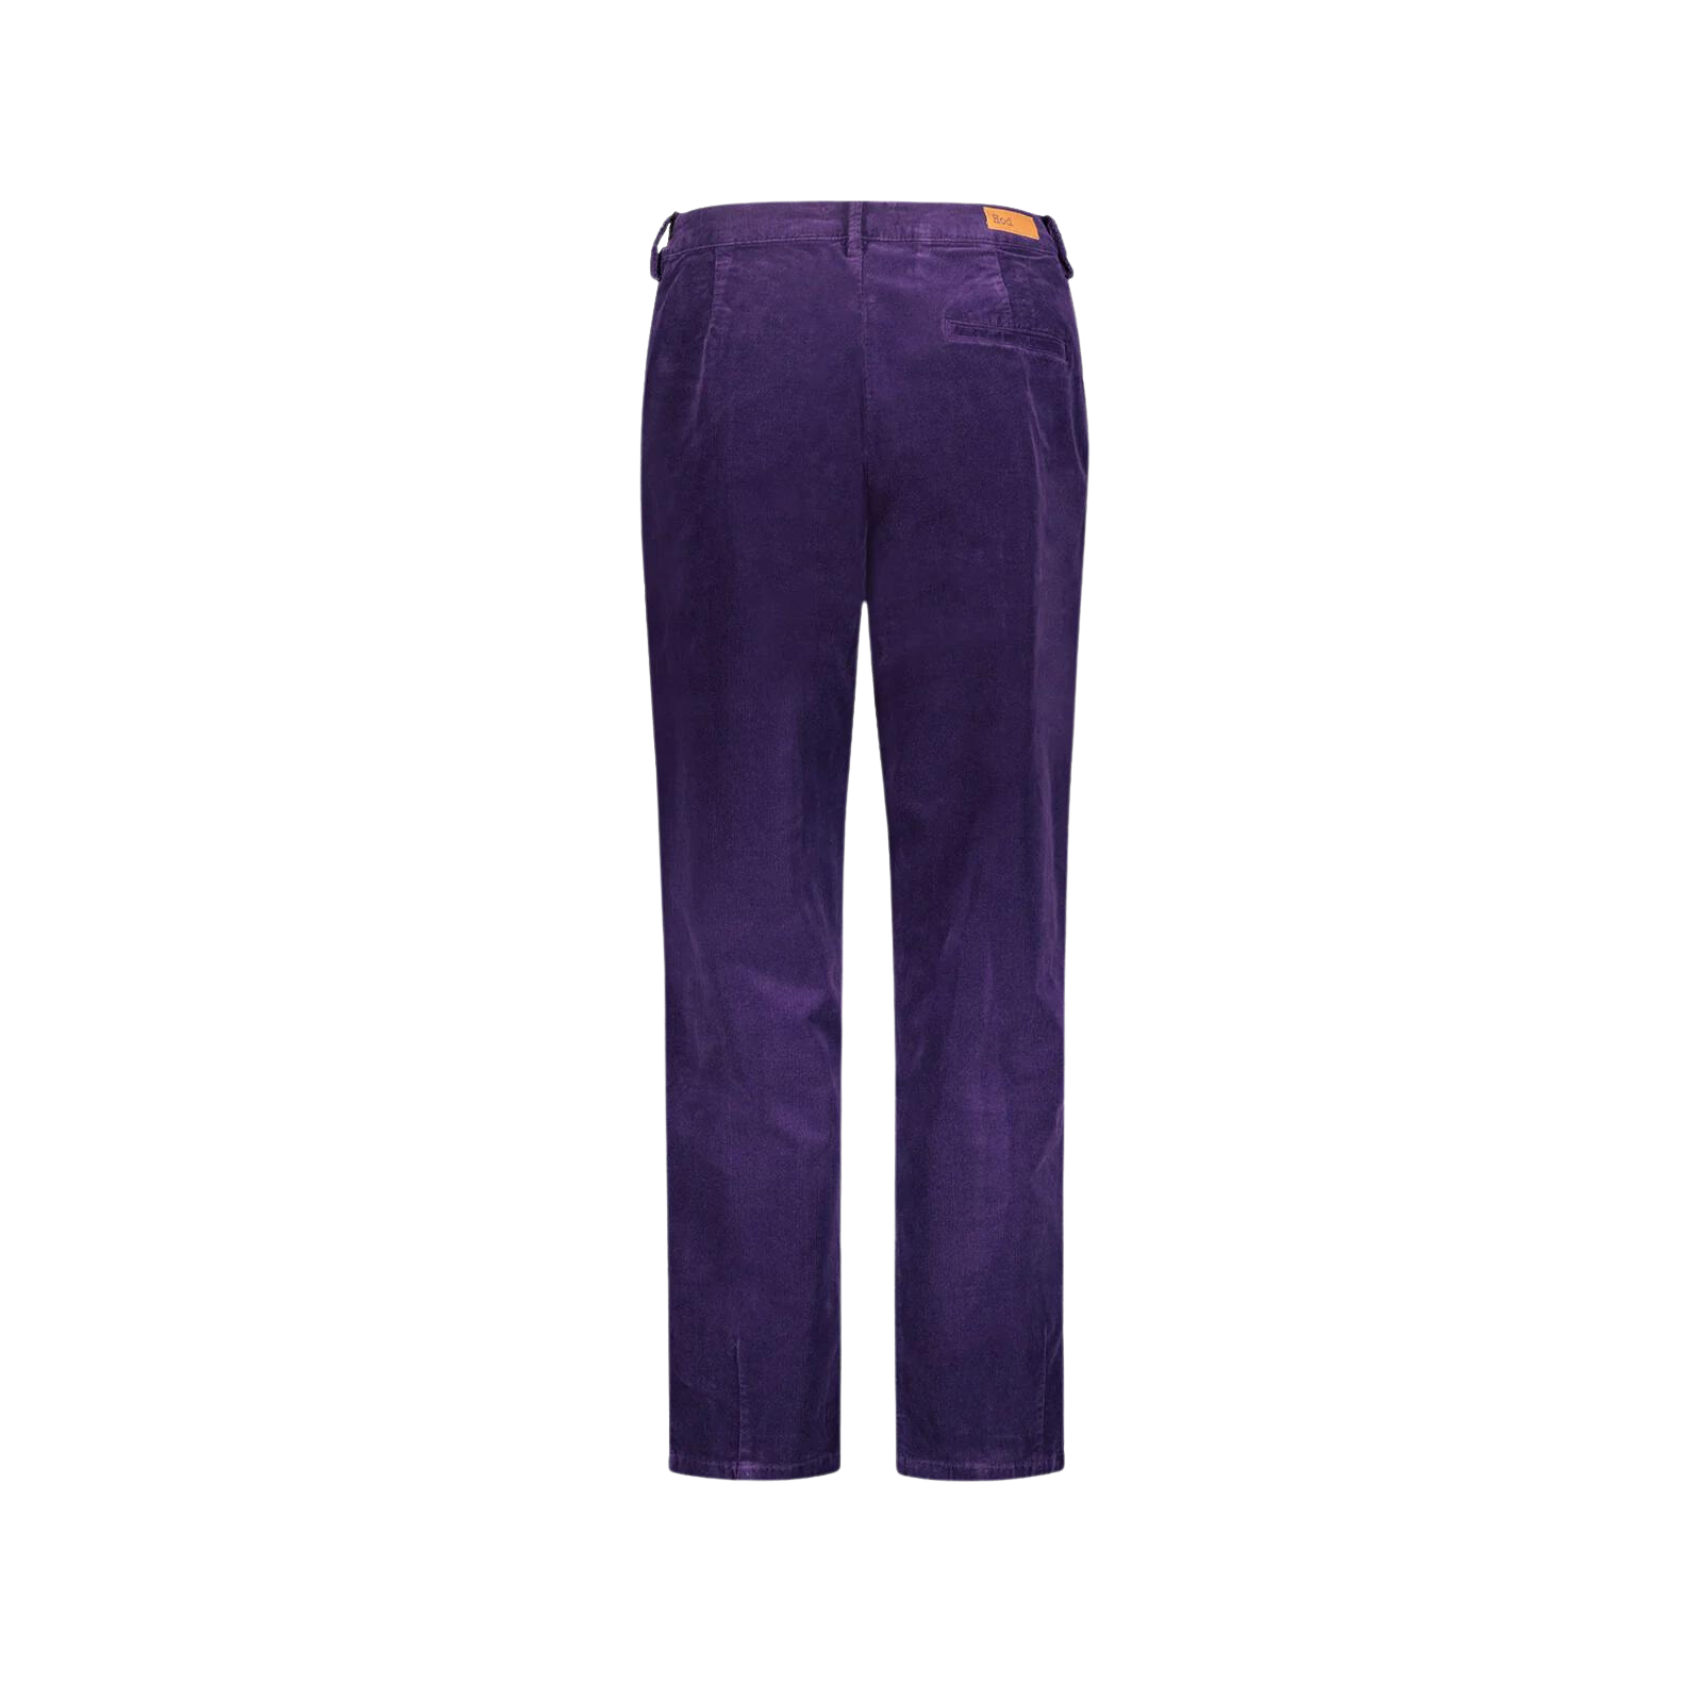 Trousers Arlette - Purple